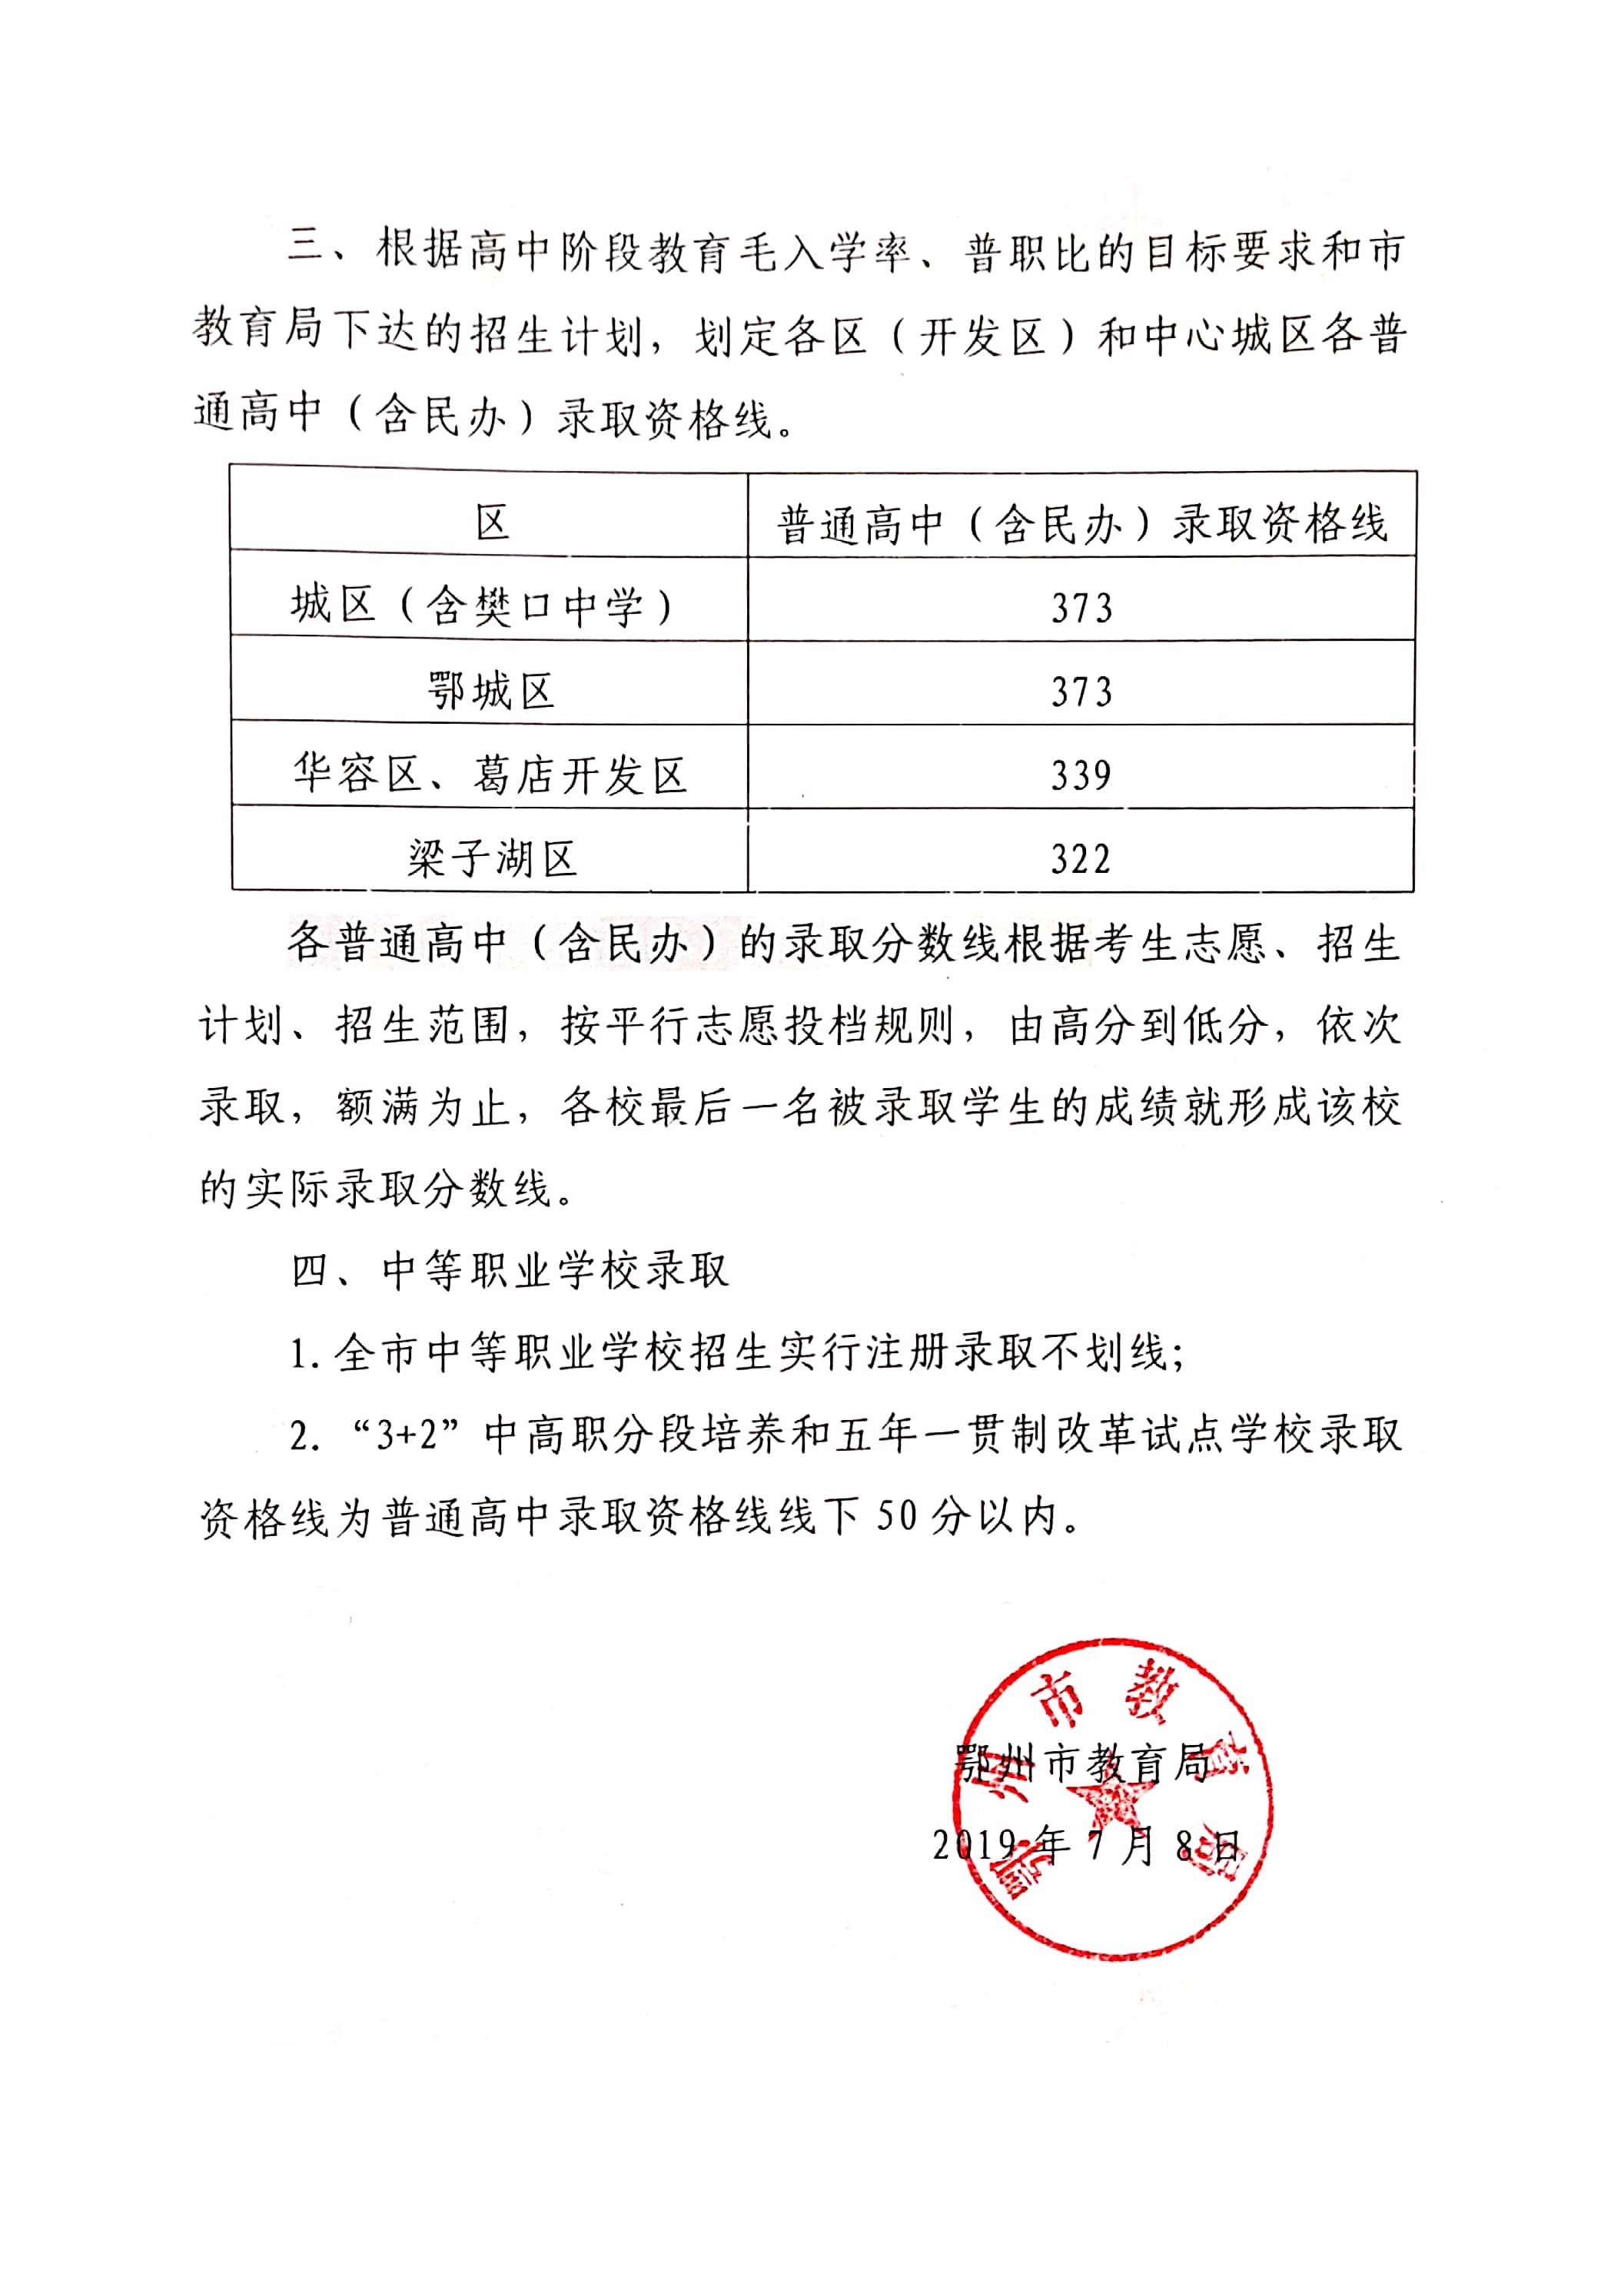 2019年湖北鄂州中考录取分数线已公布